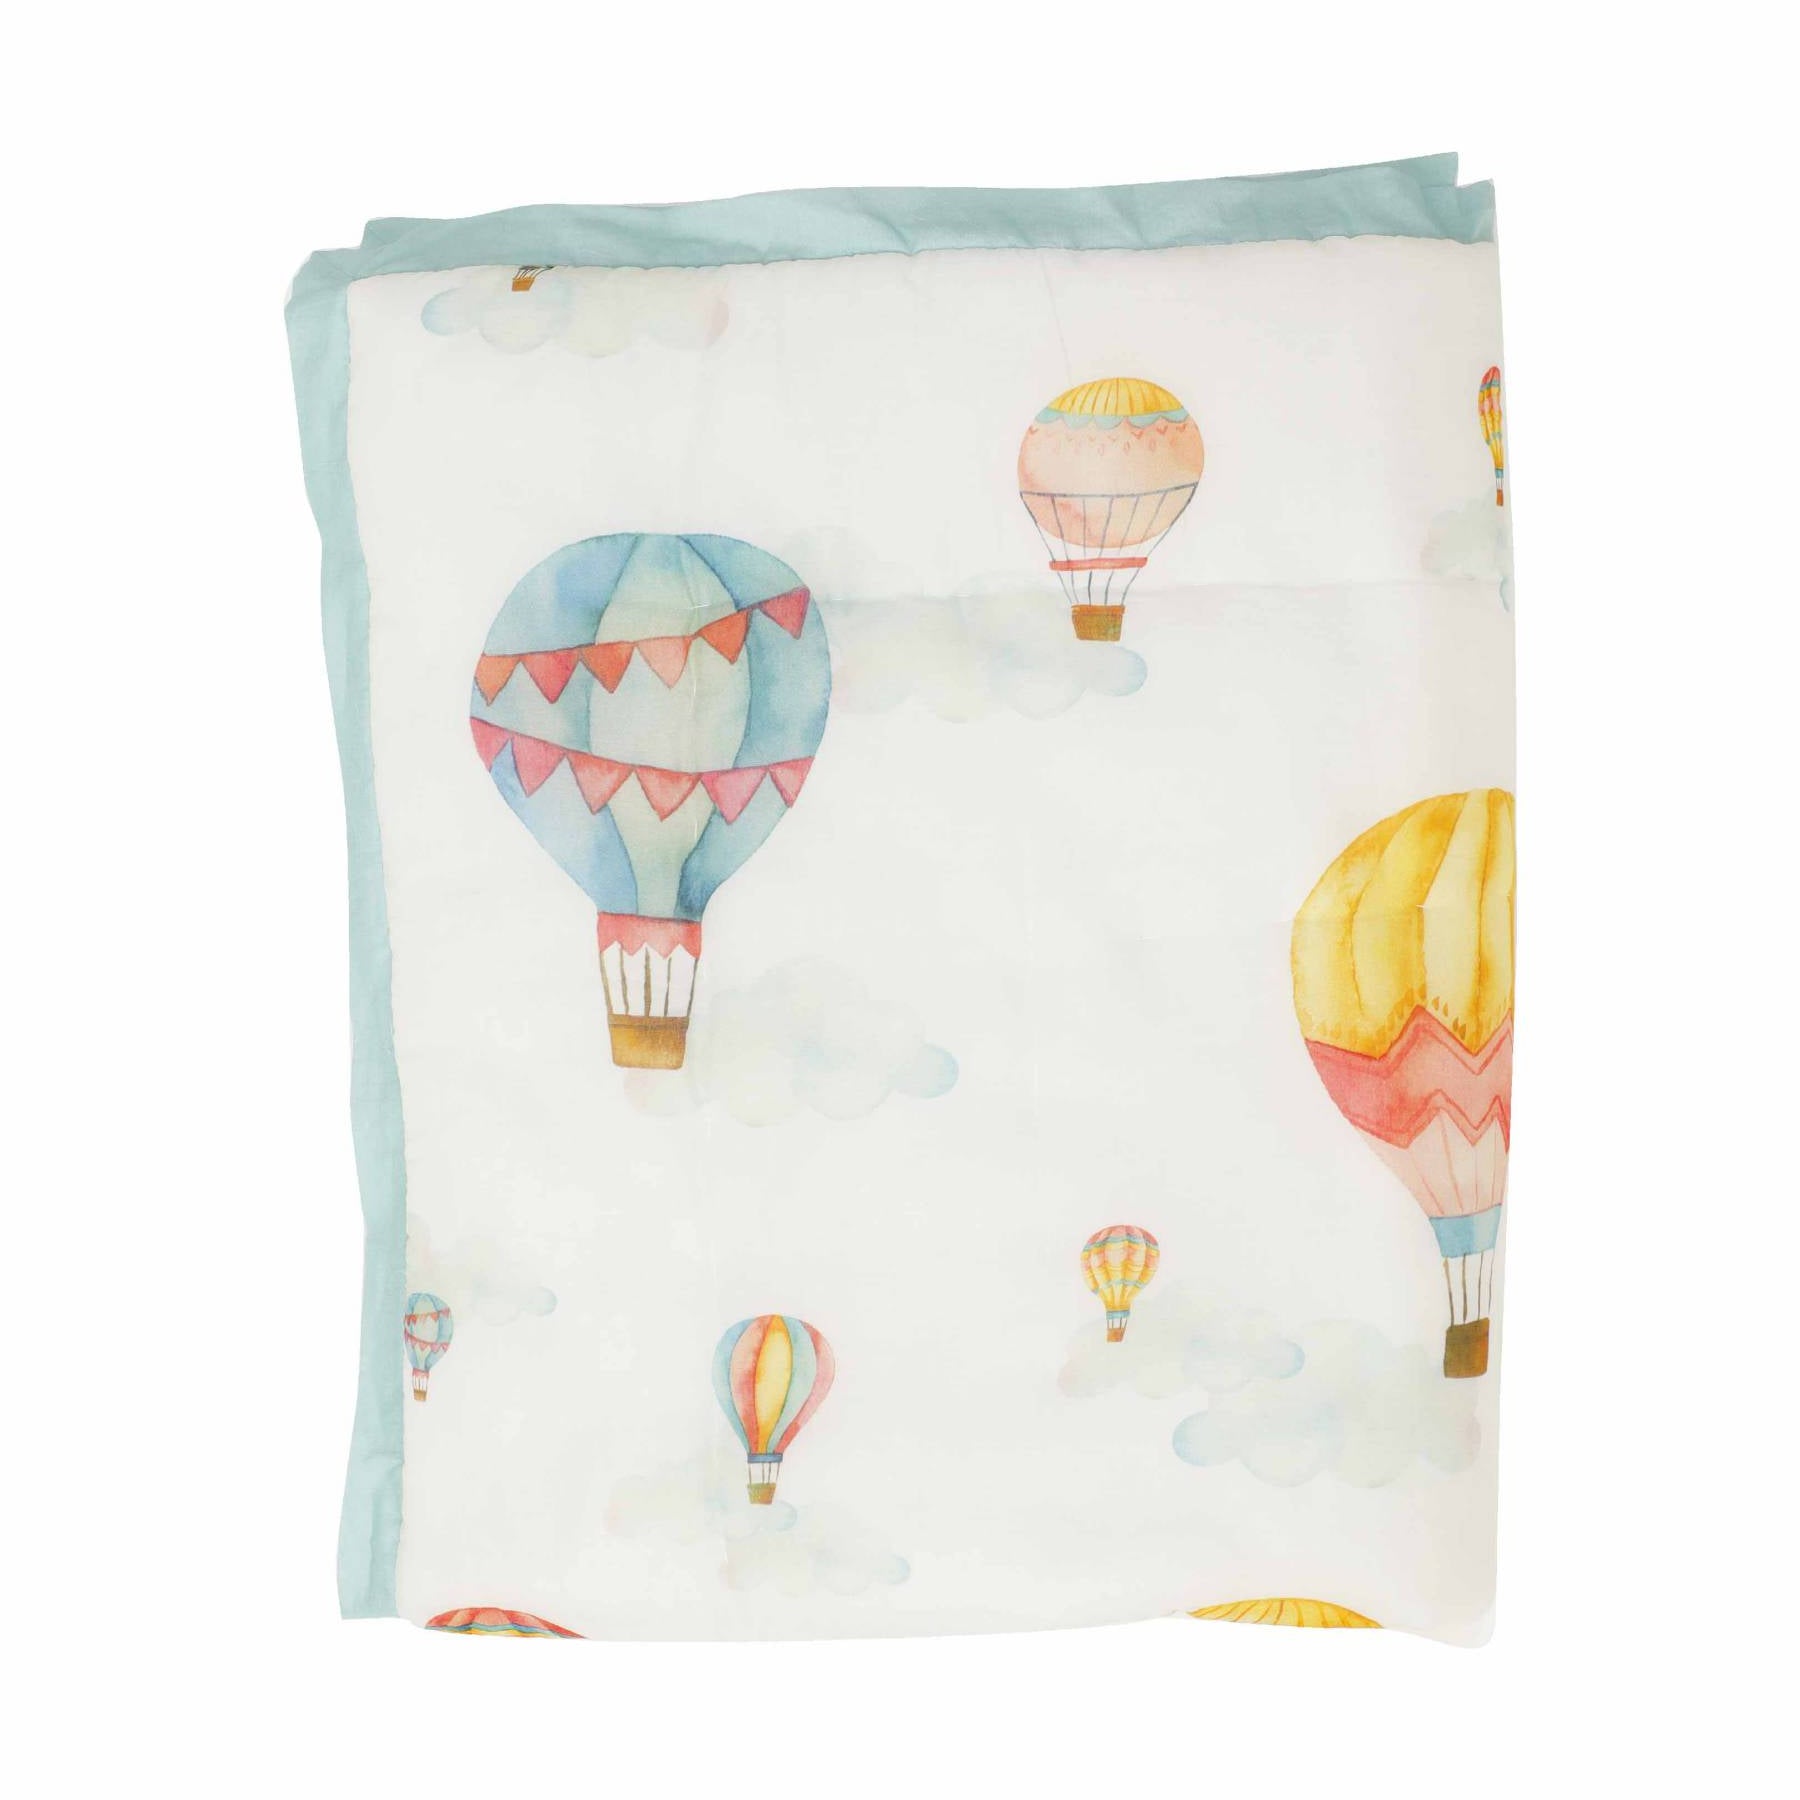 Cappadocia Hot Air Balloons - Mid Size Quilt